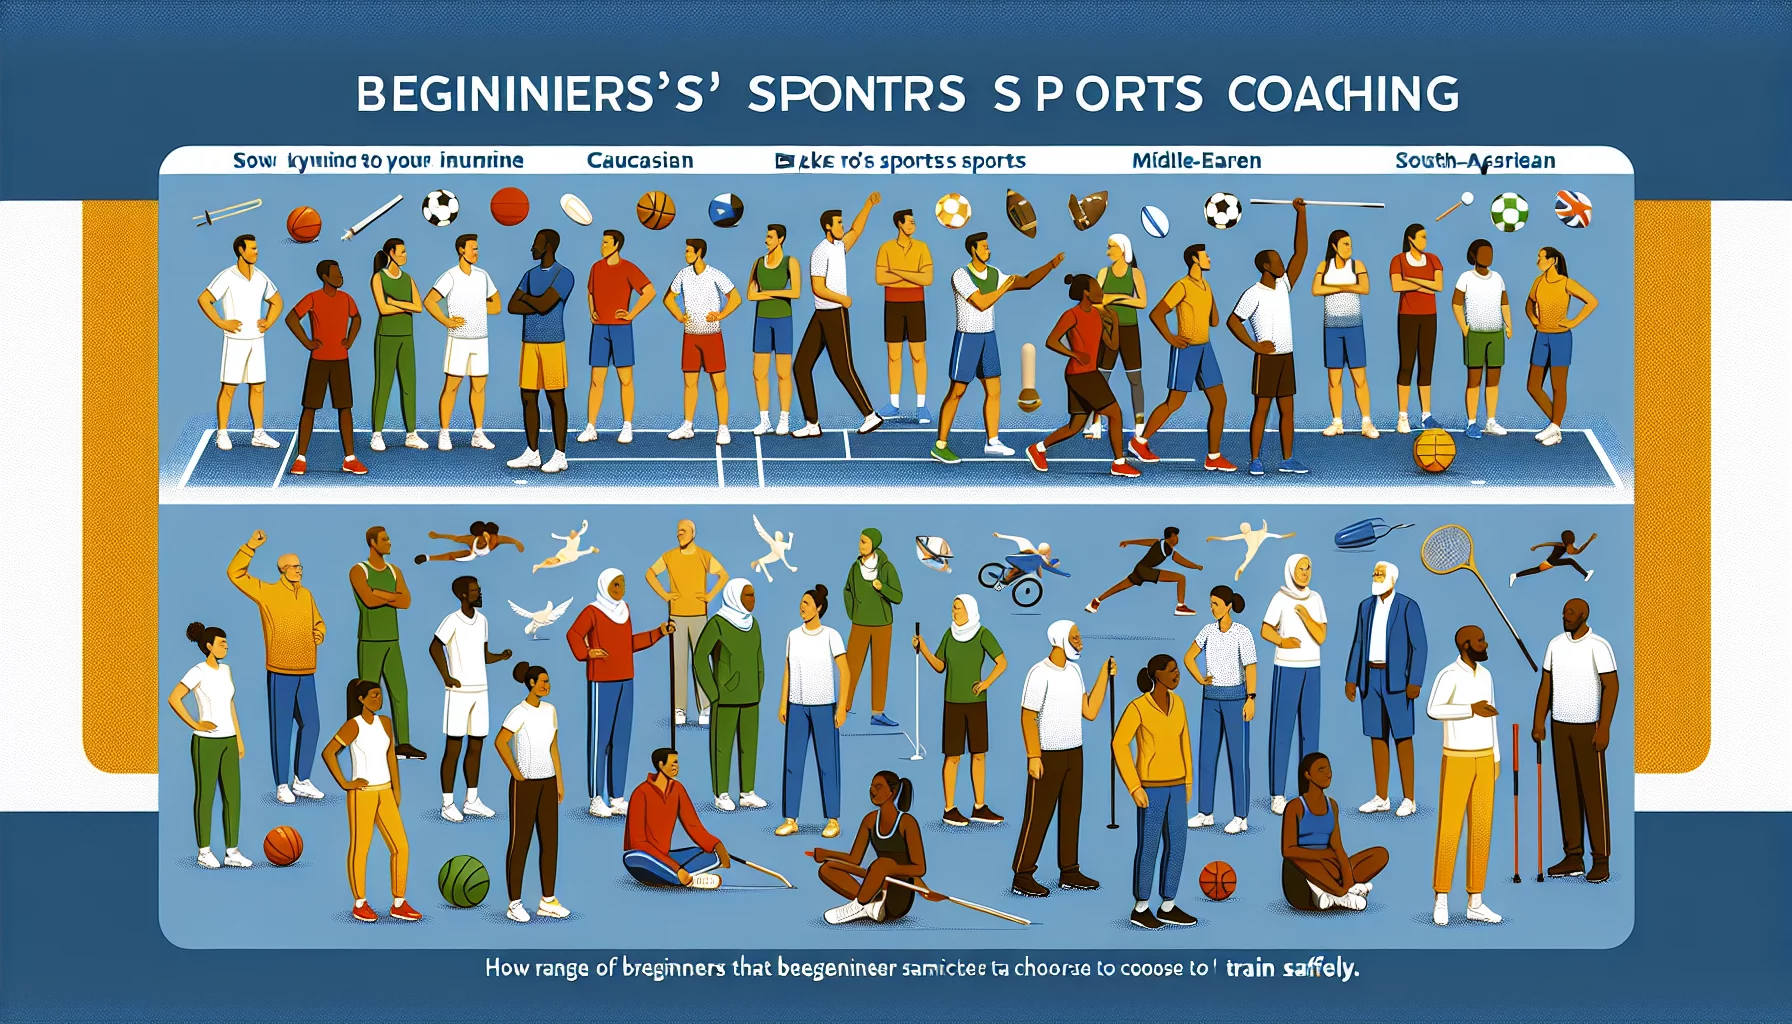 Le coaching sportif pour les débutants : comment démarrer une routine sportive, quels sports choisir, comment s'entraîner en toute sécurité